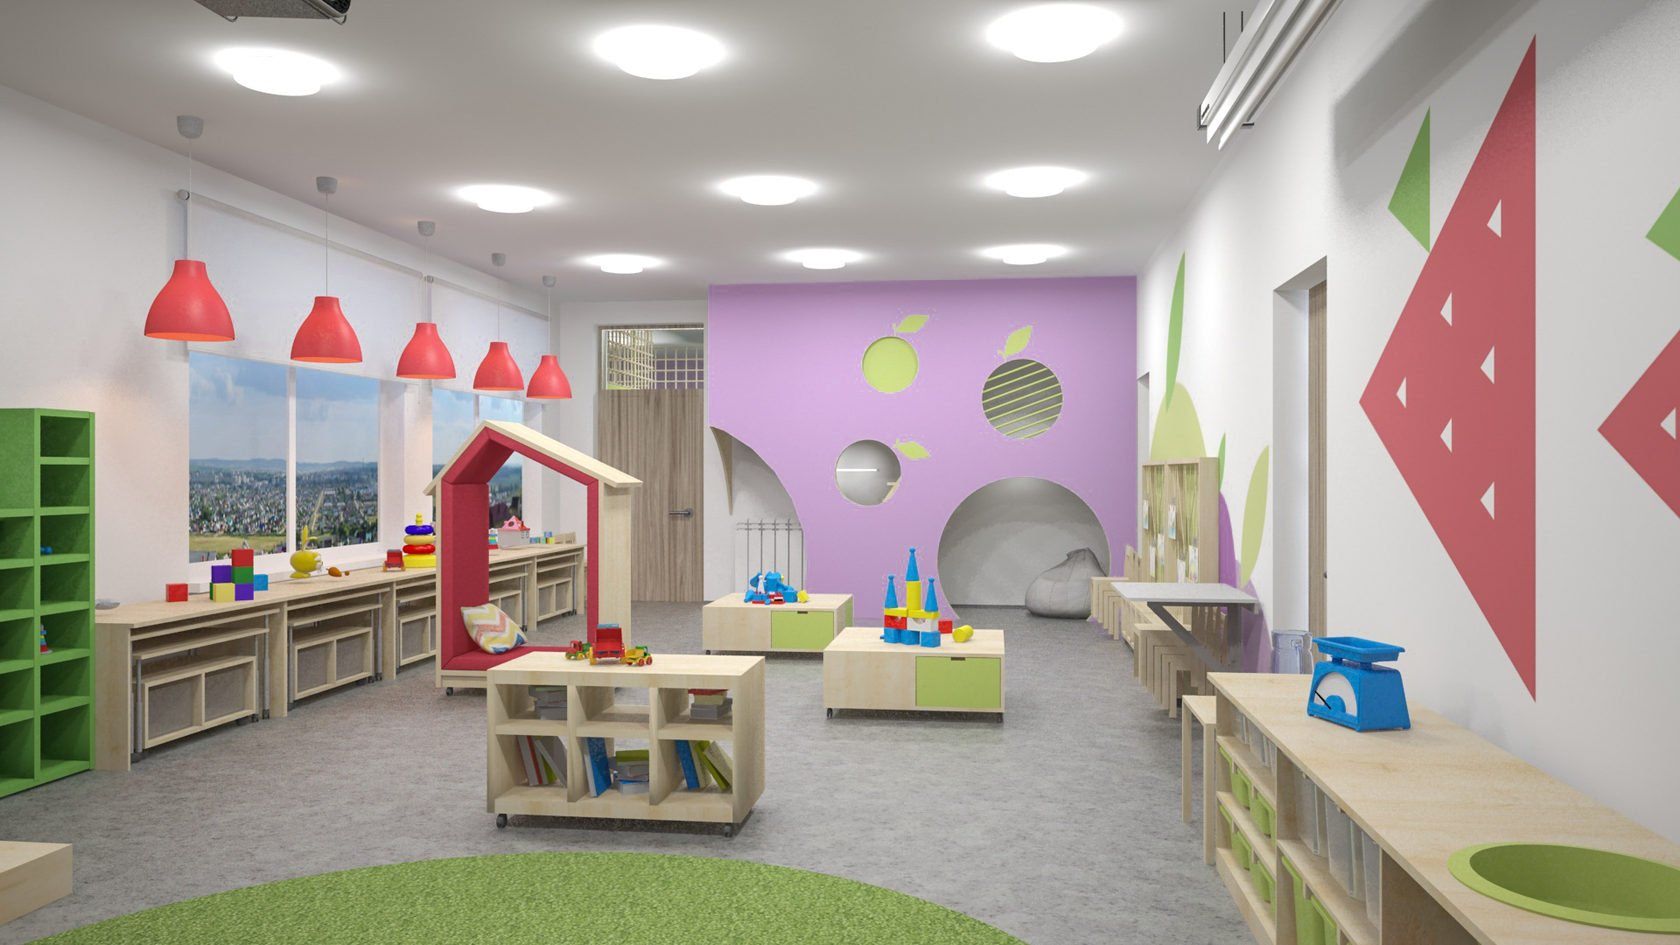 Дизайн интерьера детского сада. Идеи оформления различных помещений в детском саду.